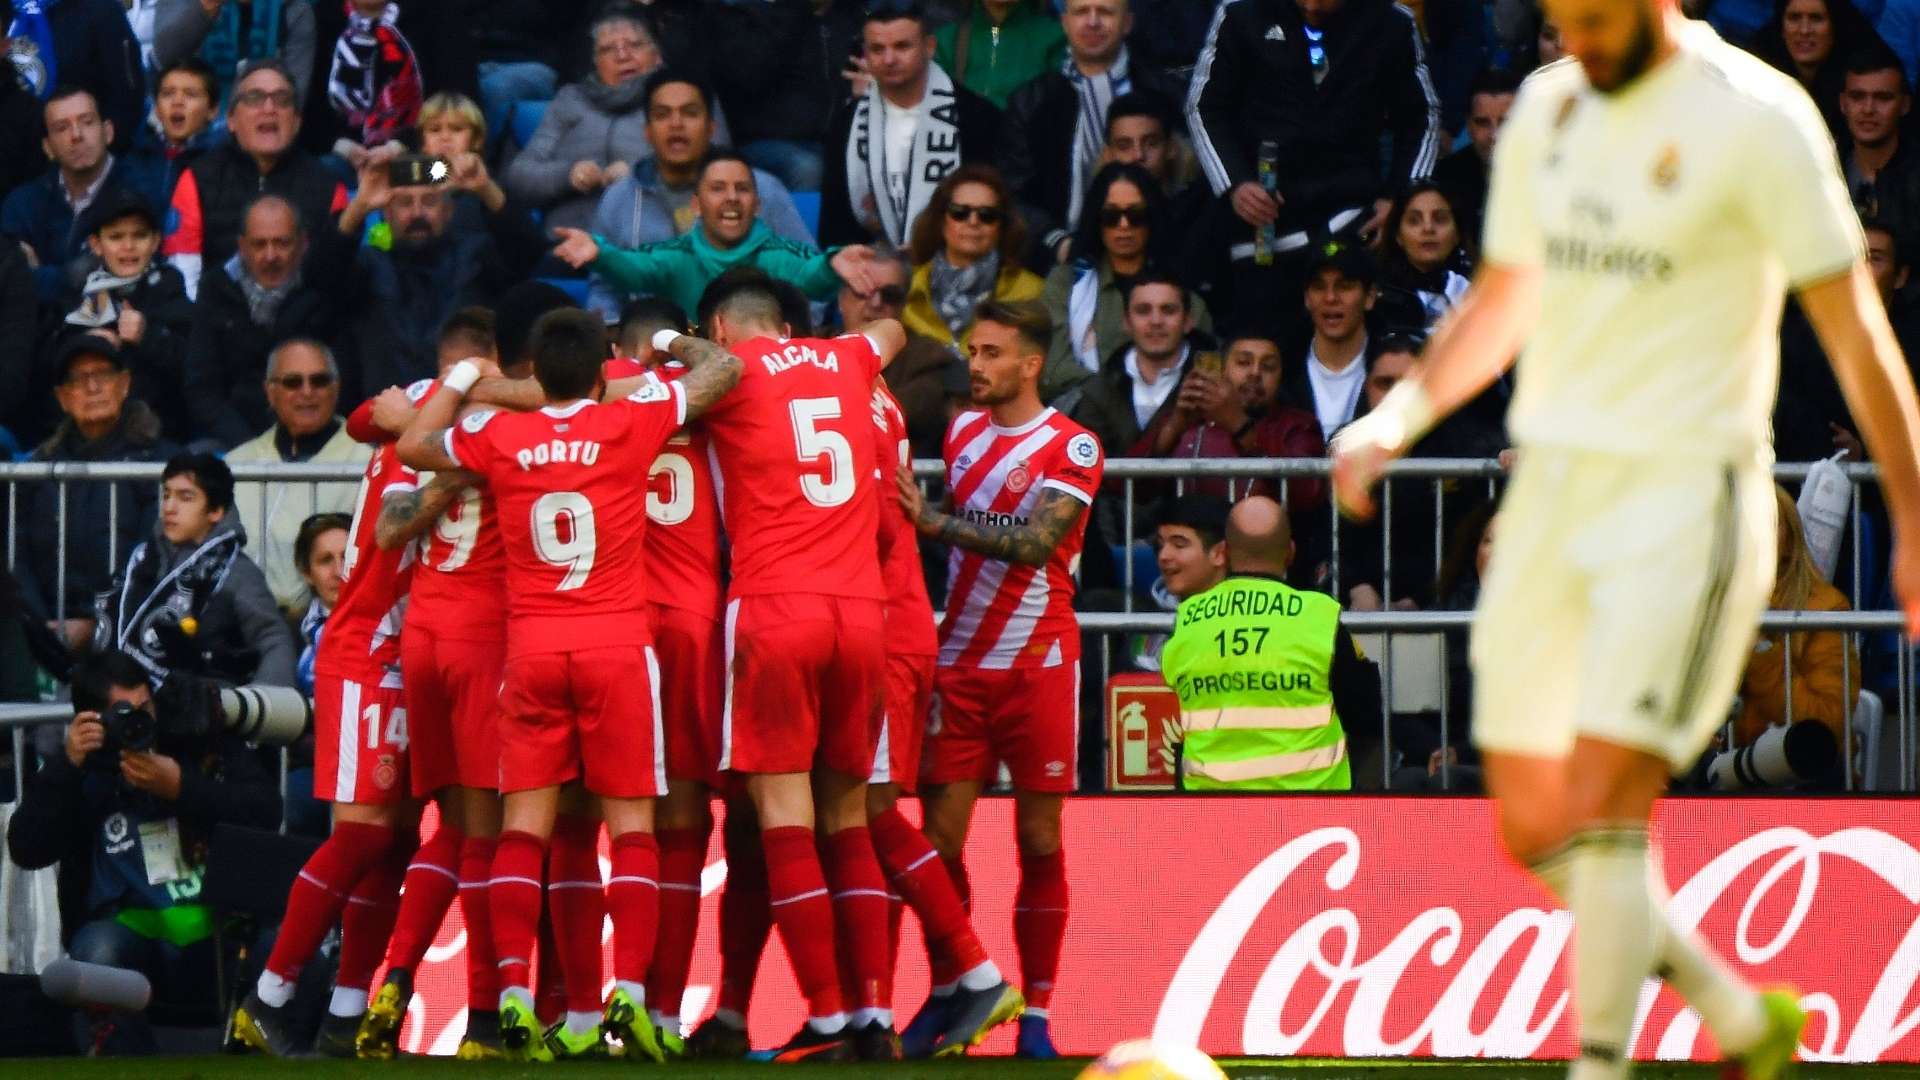 Girona celebrate vs Real Madrid